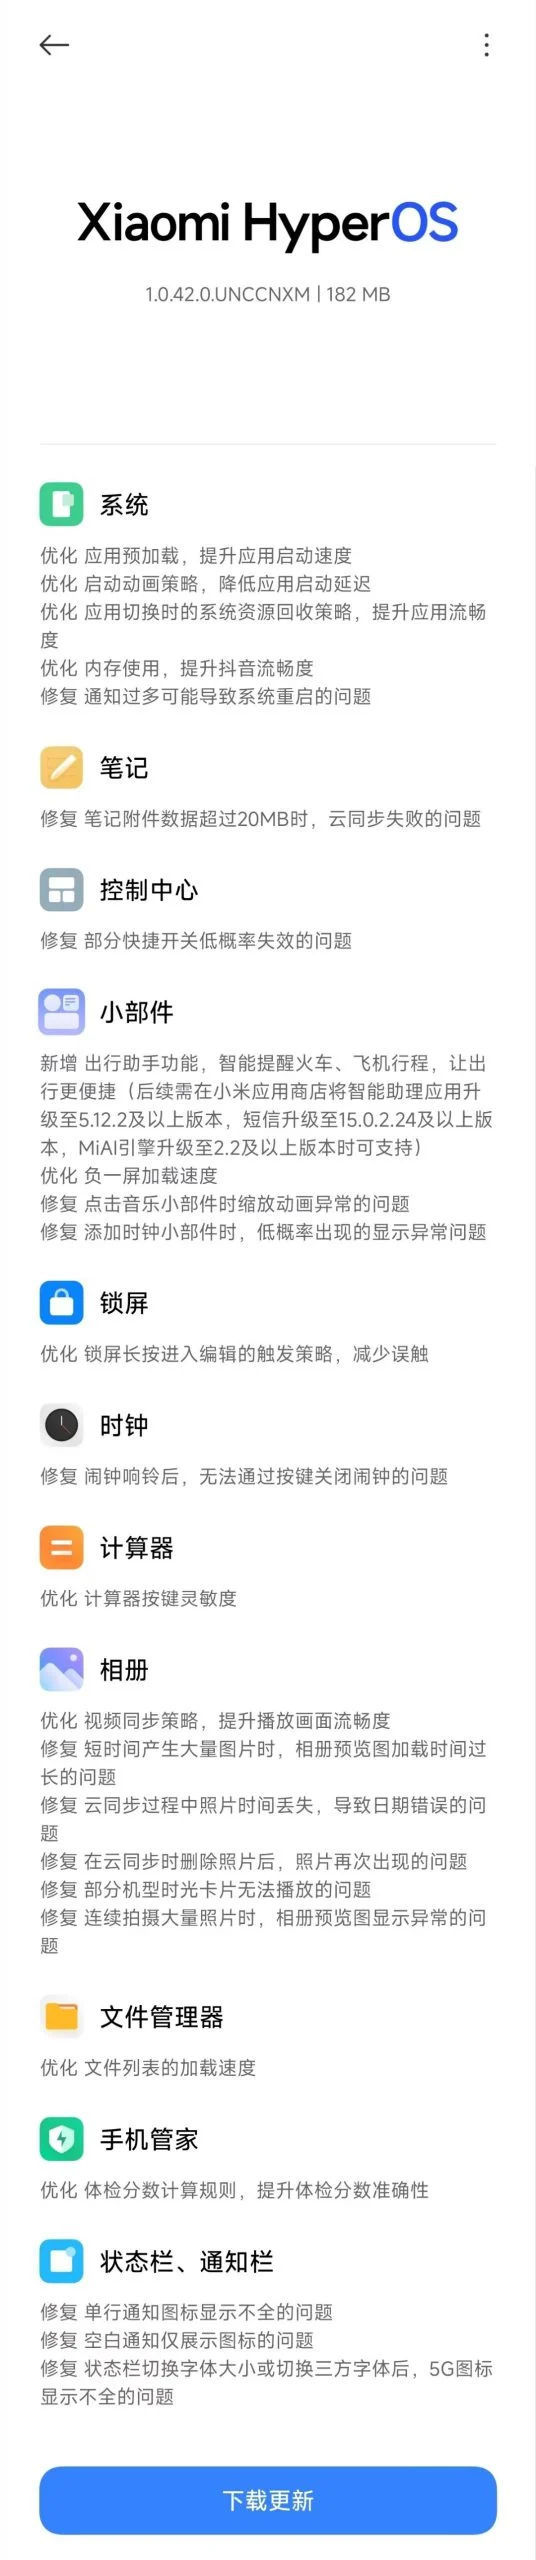 aktualizacja HyperOS 1.5 co nowego Xiaomi nowości